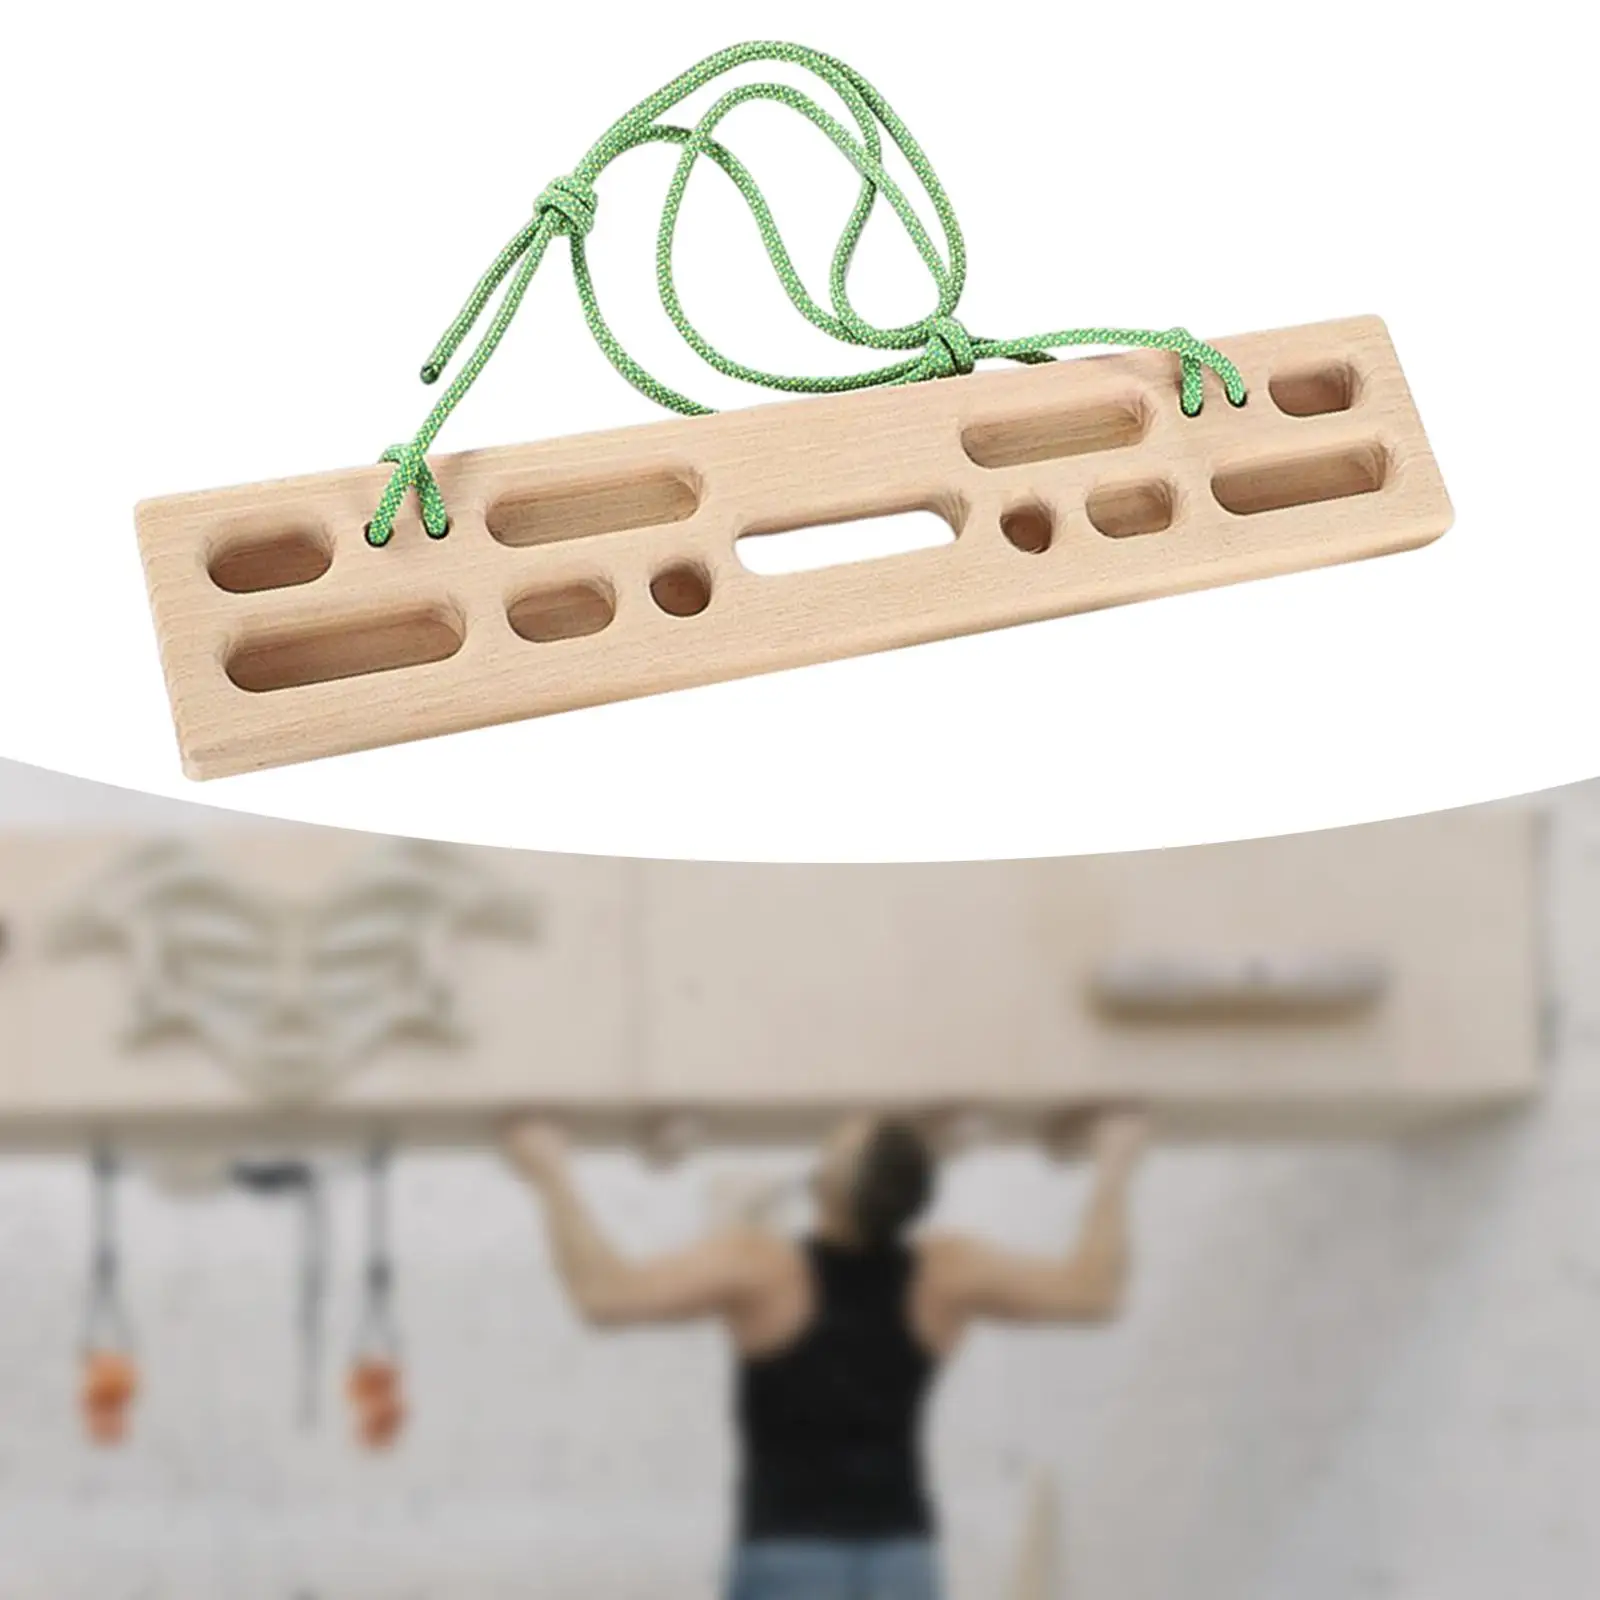 Climbing Hangboard Climbing Fingerboard Hand, Wrist, and Forearm Strengthener 50cmx10cm for Home Climbers Indoor Door Beginners